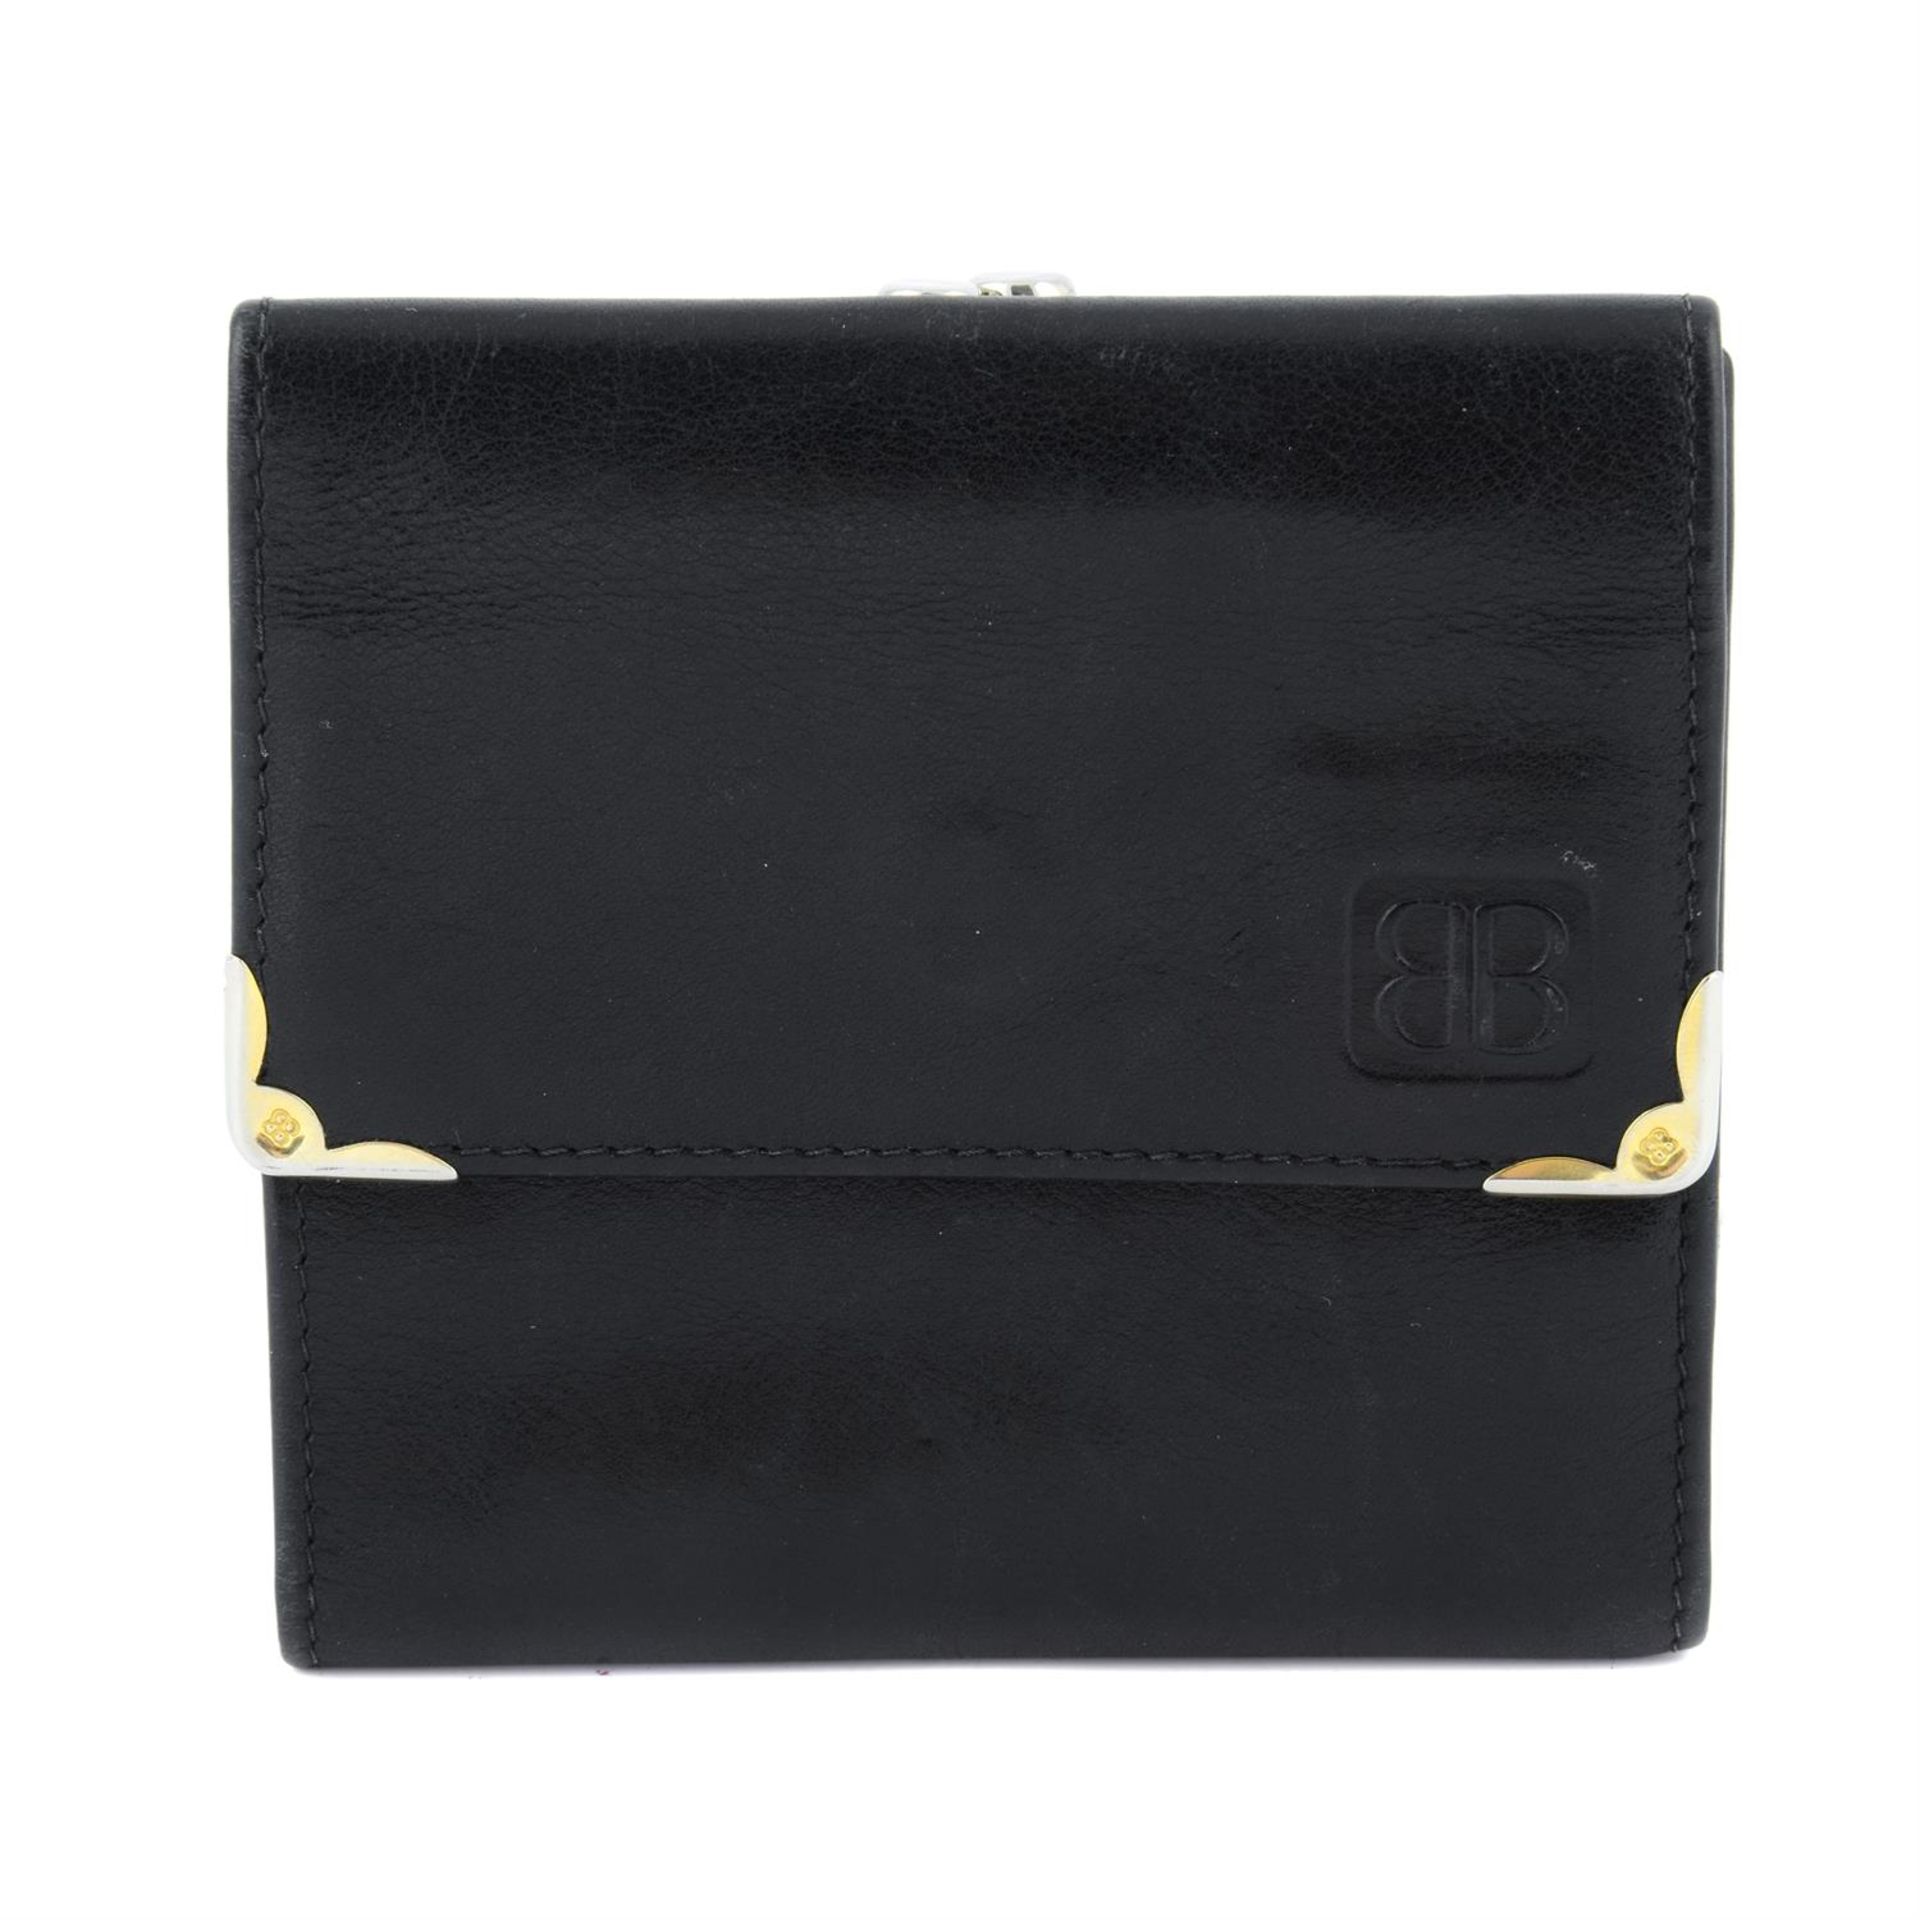 BALENCIAGA - a black leather compact wallet.